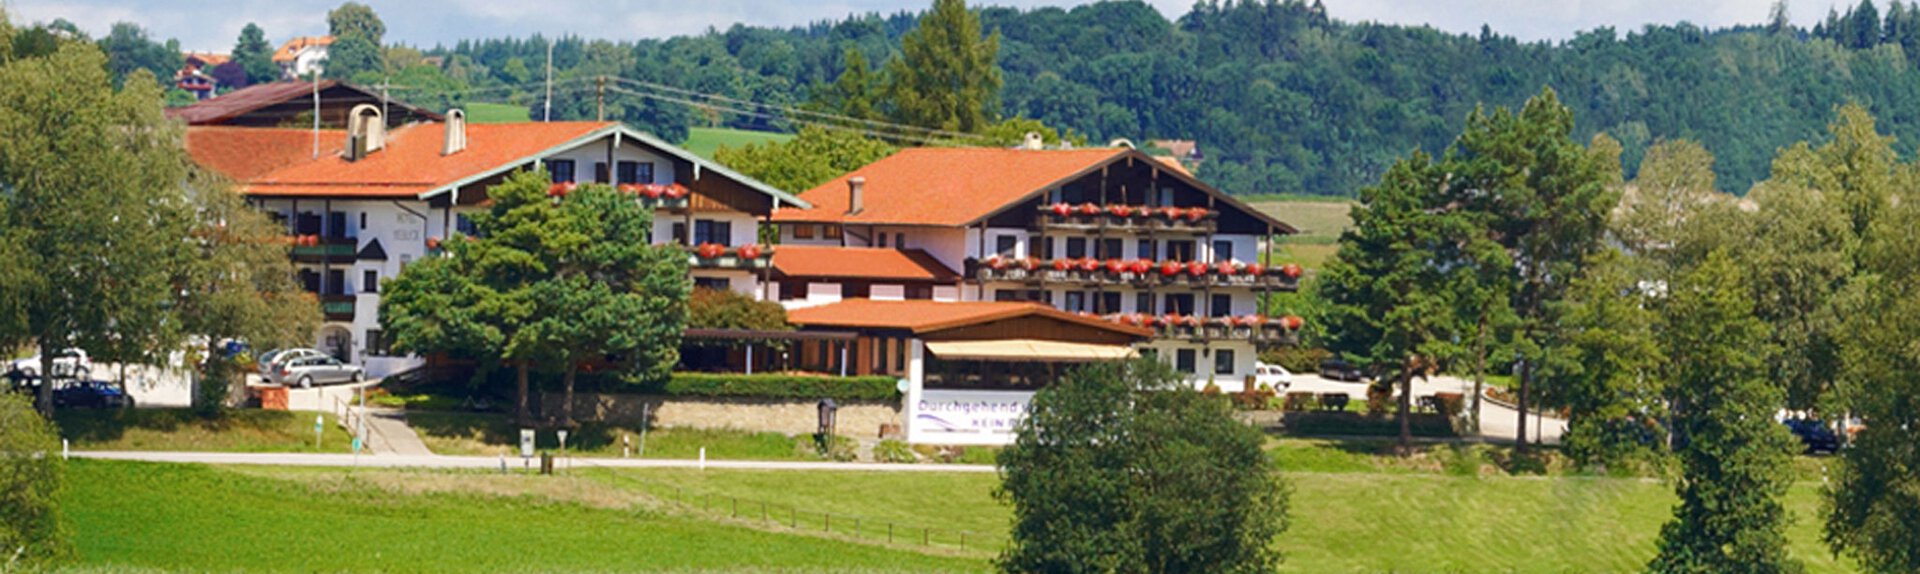 Hotel Seeblick, Pelhamer See | © Hotel Seeblick Bad Endorf